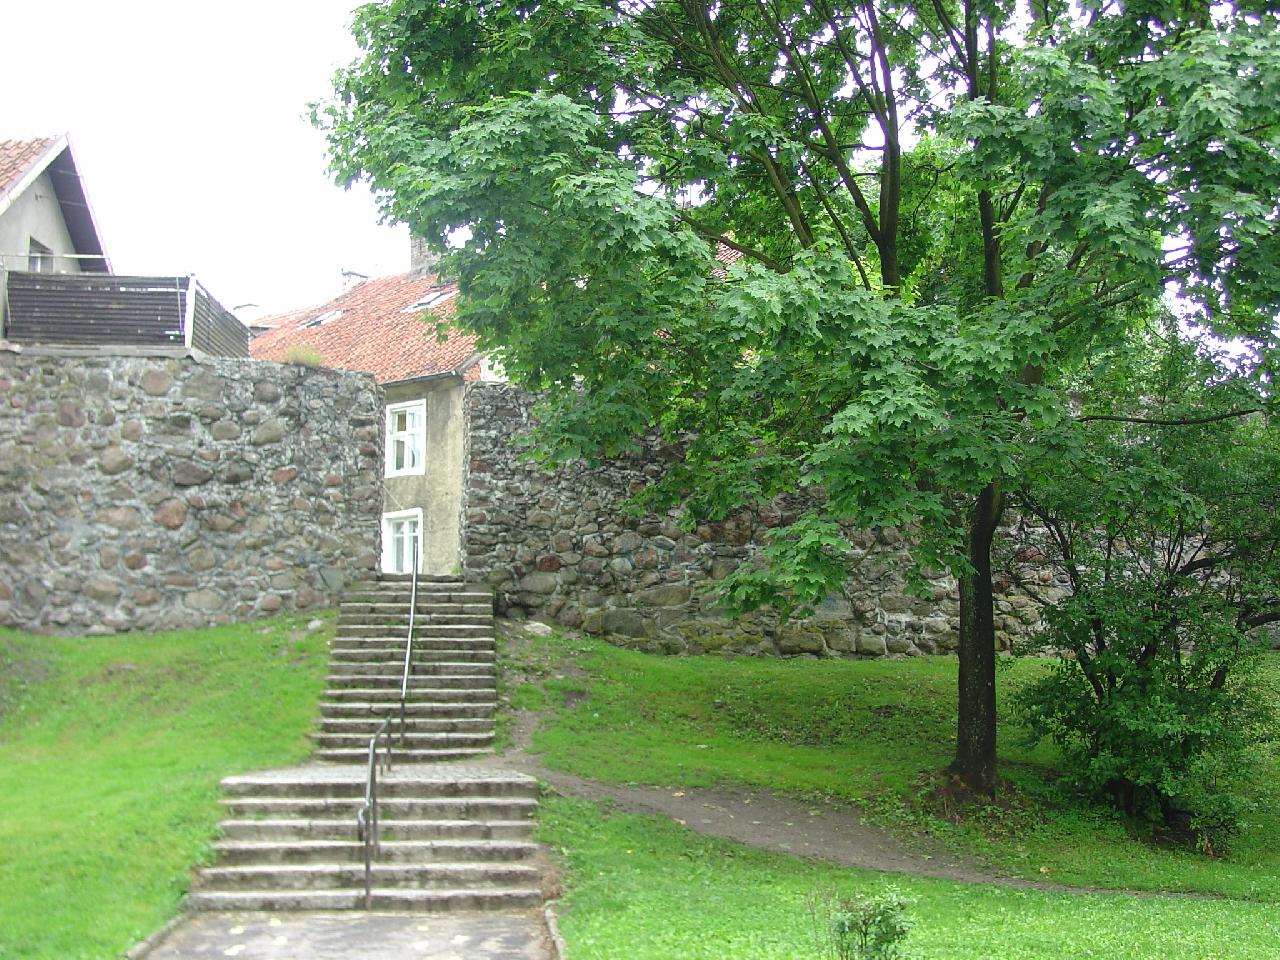 Schody prowadzące do wejścia przez mury obronne